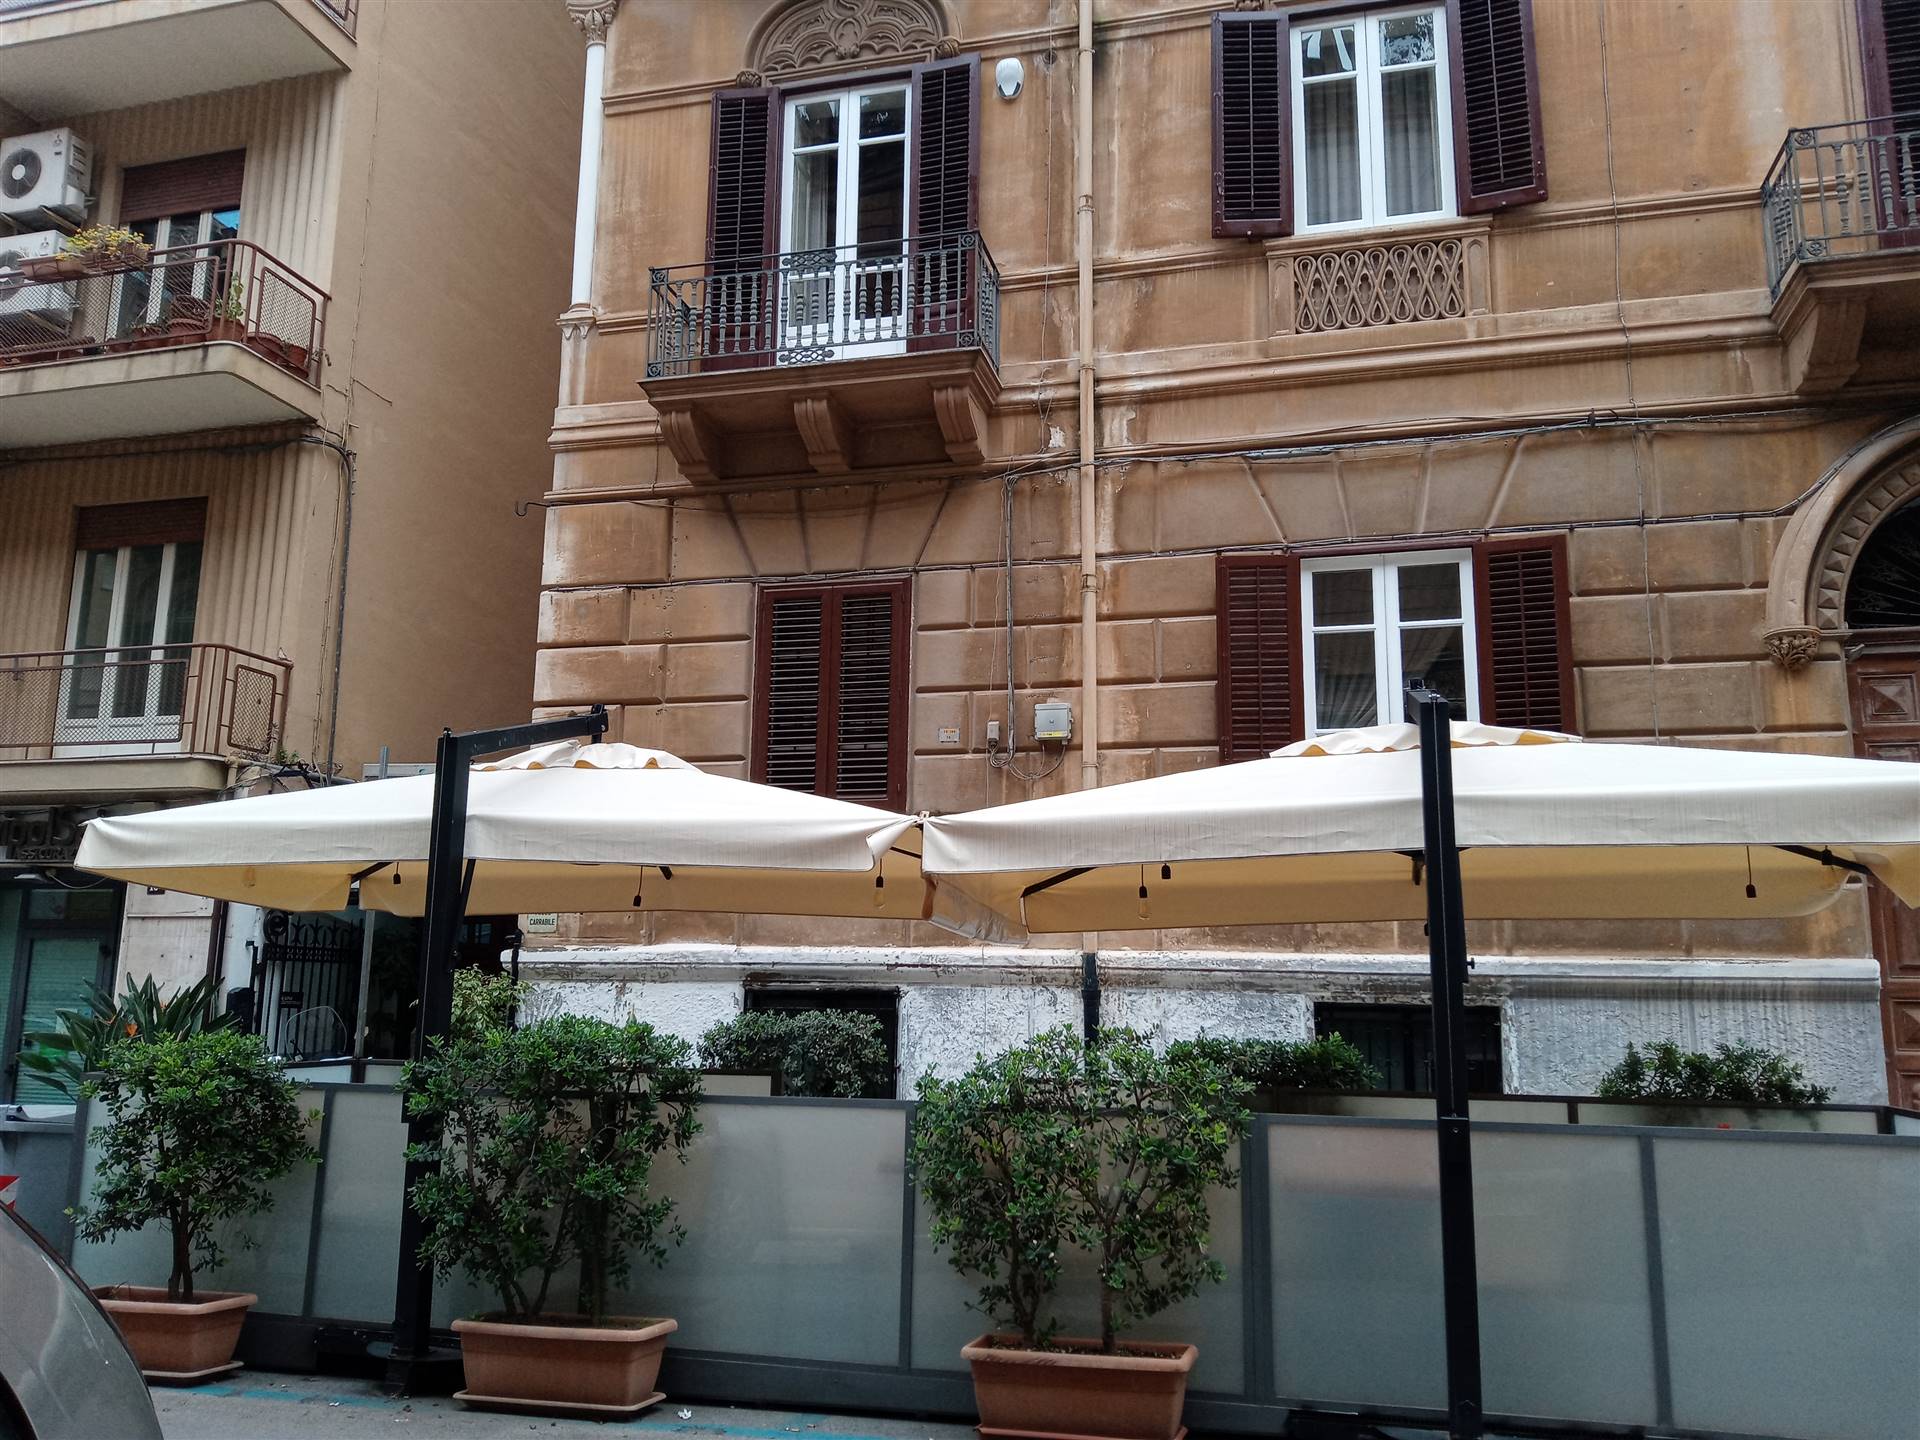 Locale commerciale ristrutturata, Palermo politeama